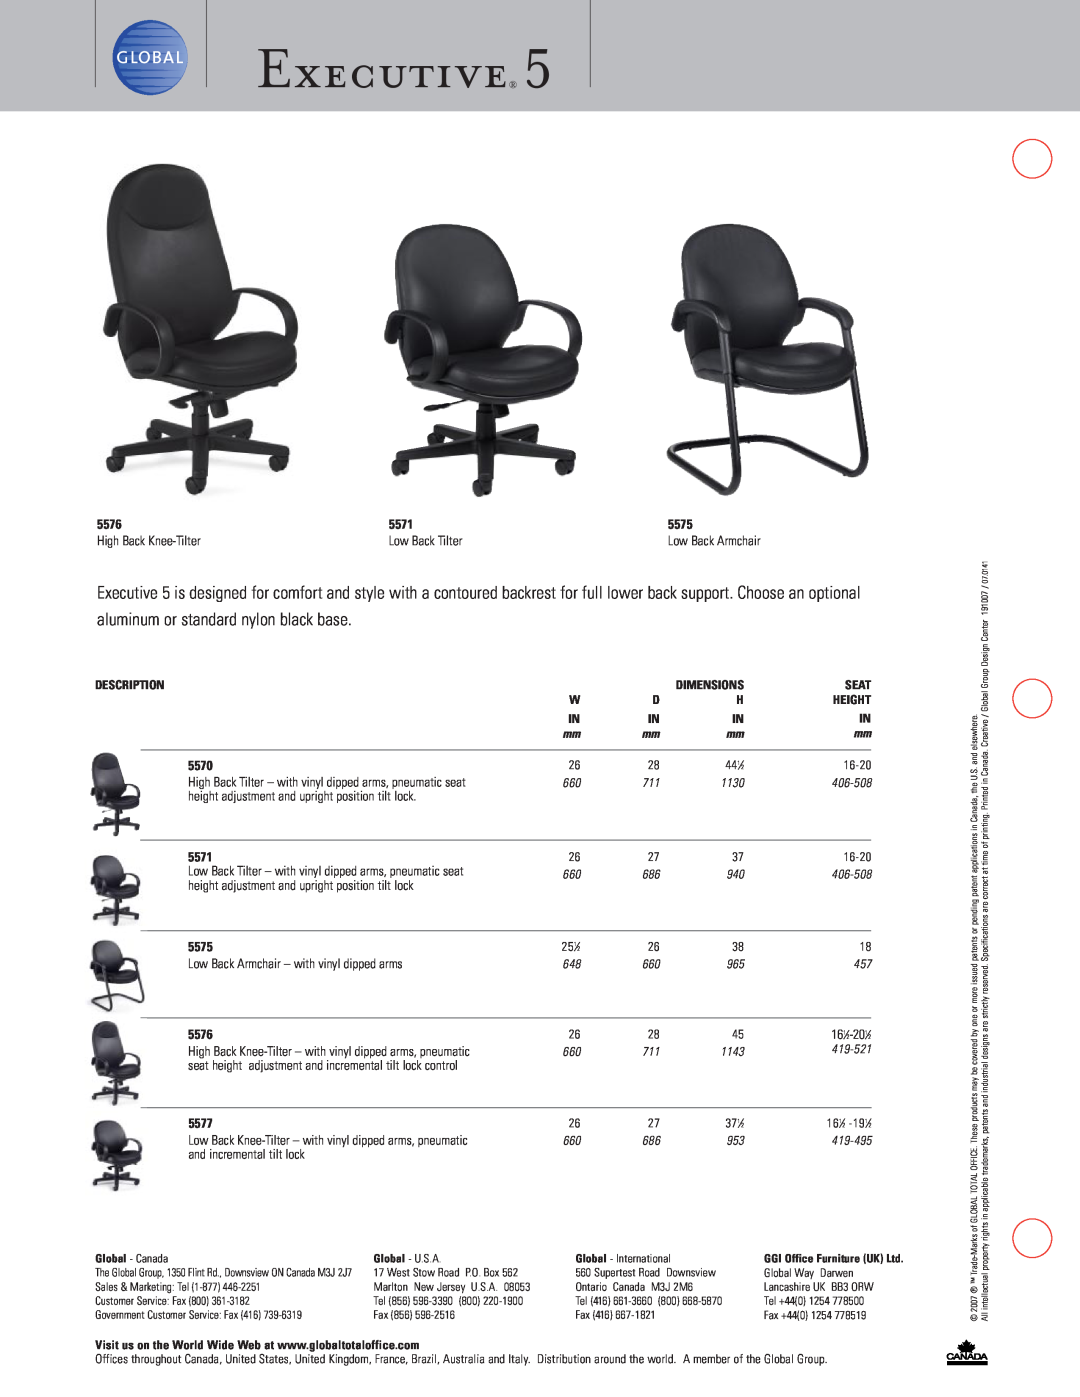 Global Upholstery Co 5576 Executive, aluminum or standard nylon black base, 5571, 5575, High Back Knee-Tilter, 5570, 5577 